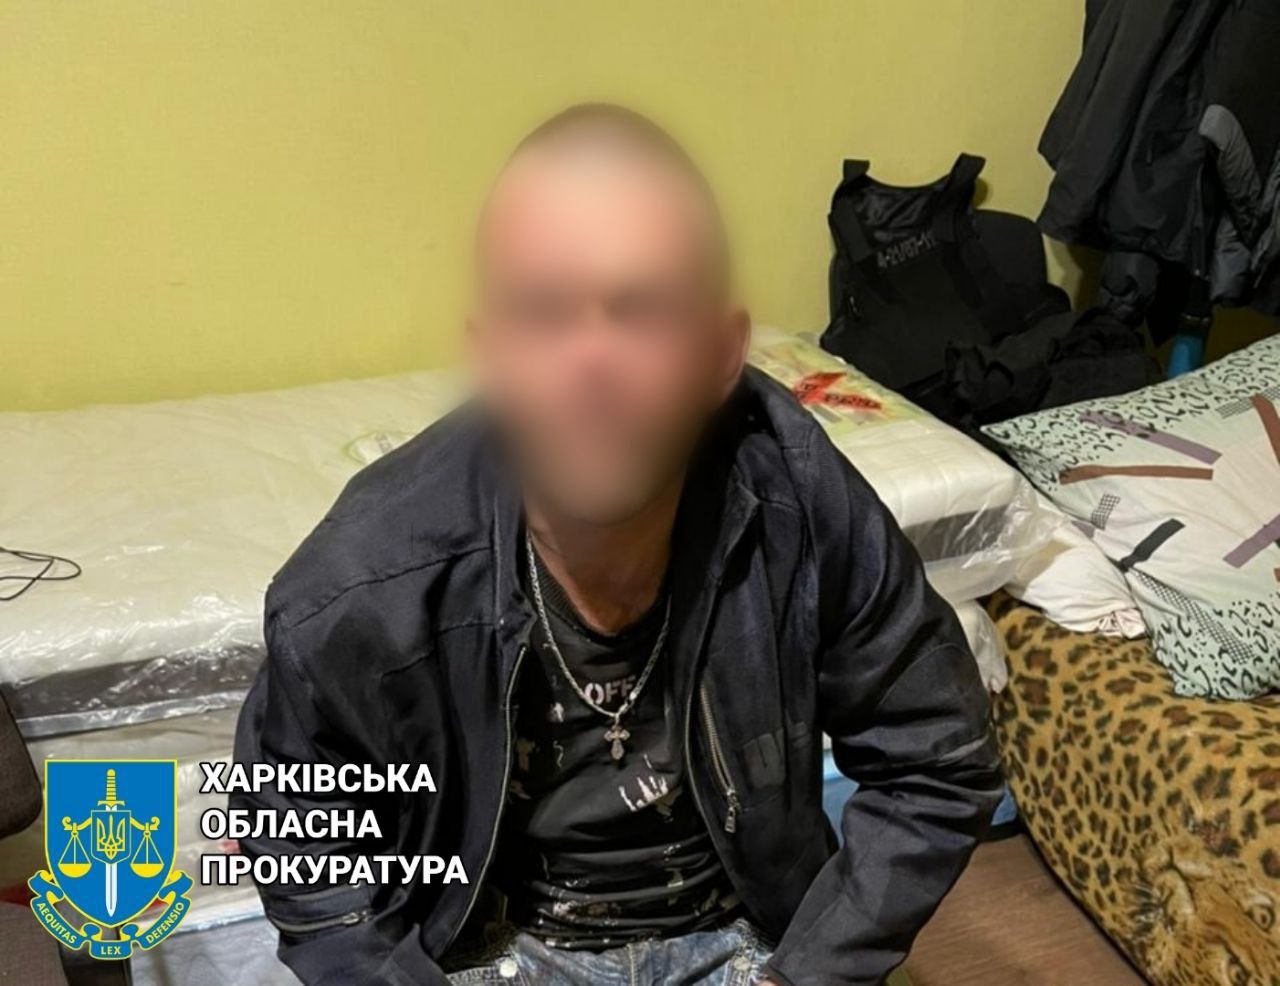 Искромсал ножом тело женщины и забил до смертьи вторую, мужчина ждет суда в Харькове